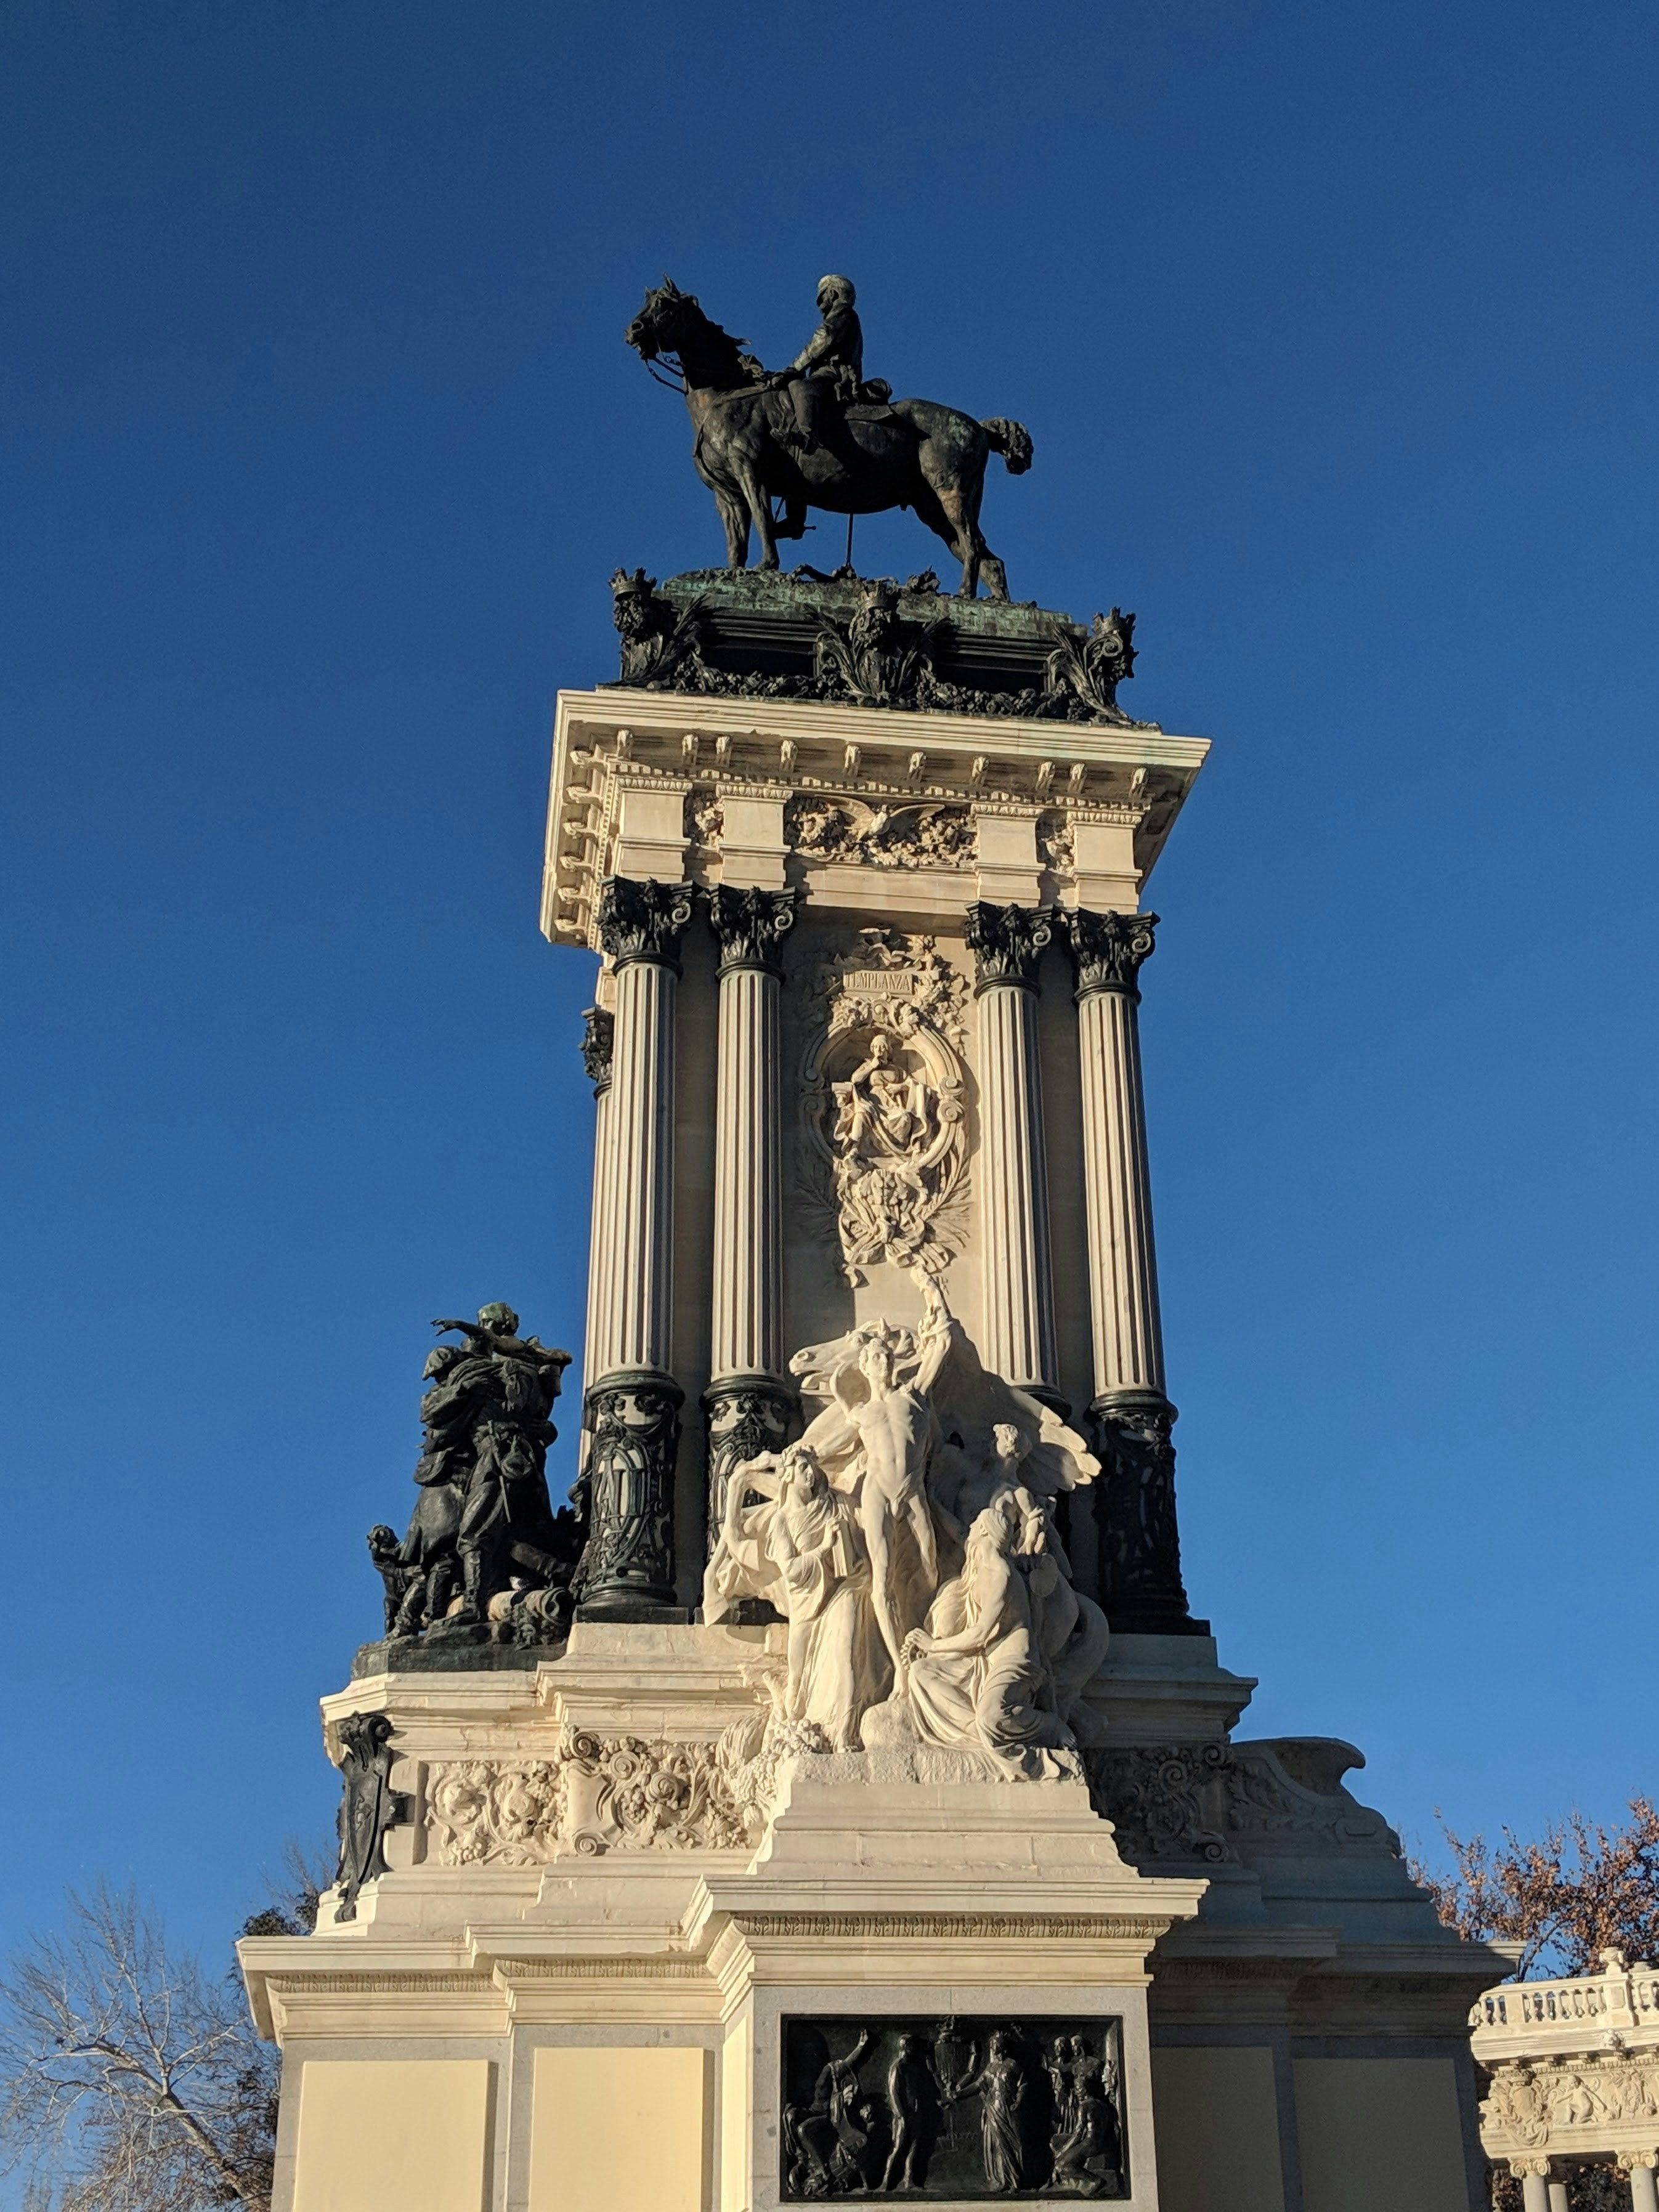 One of the central monuments in Retiro Park, Madrid. Taken December, 2018.